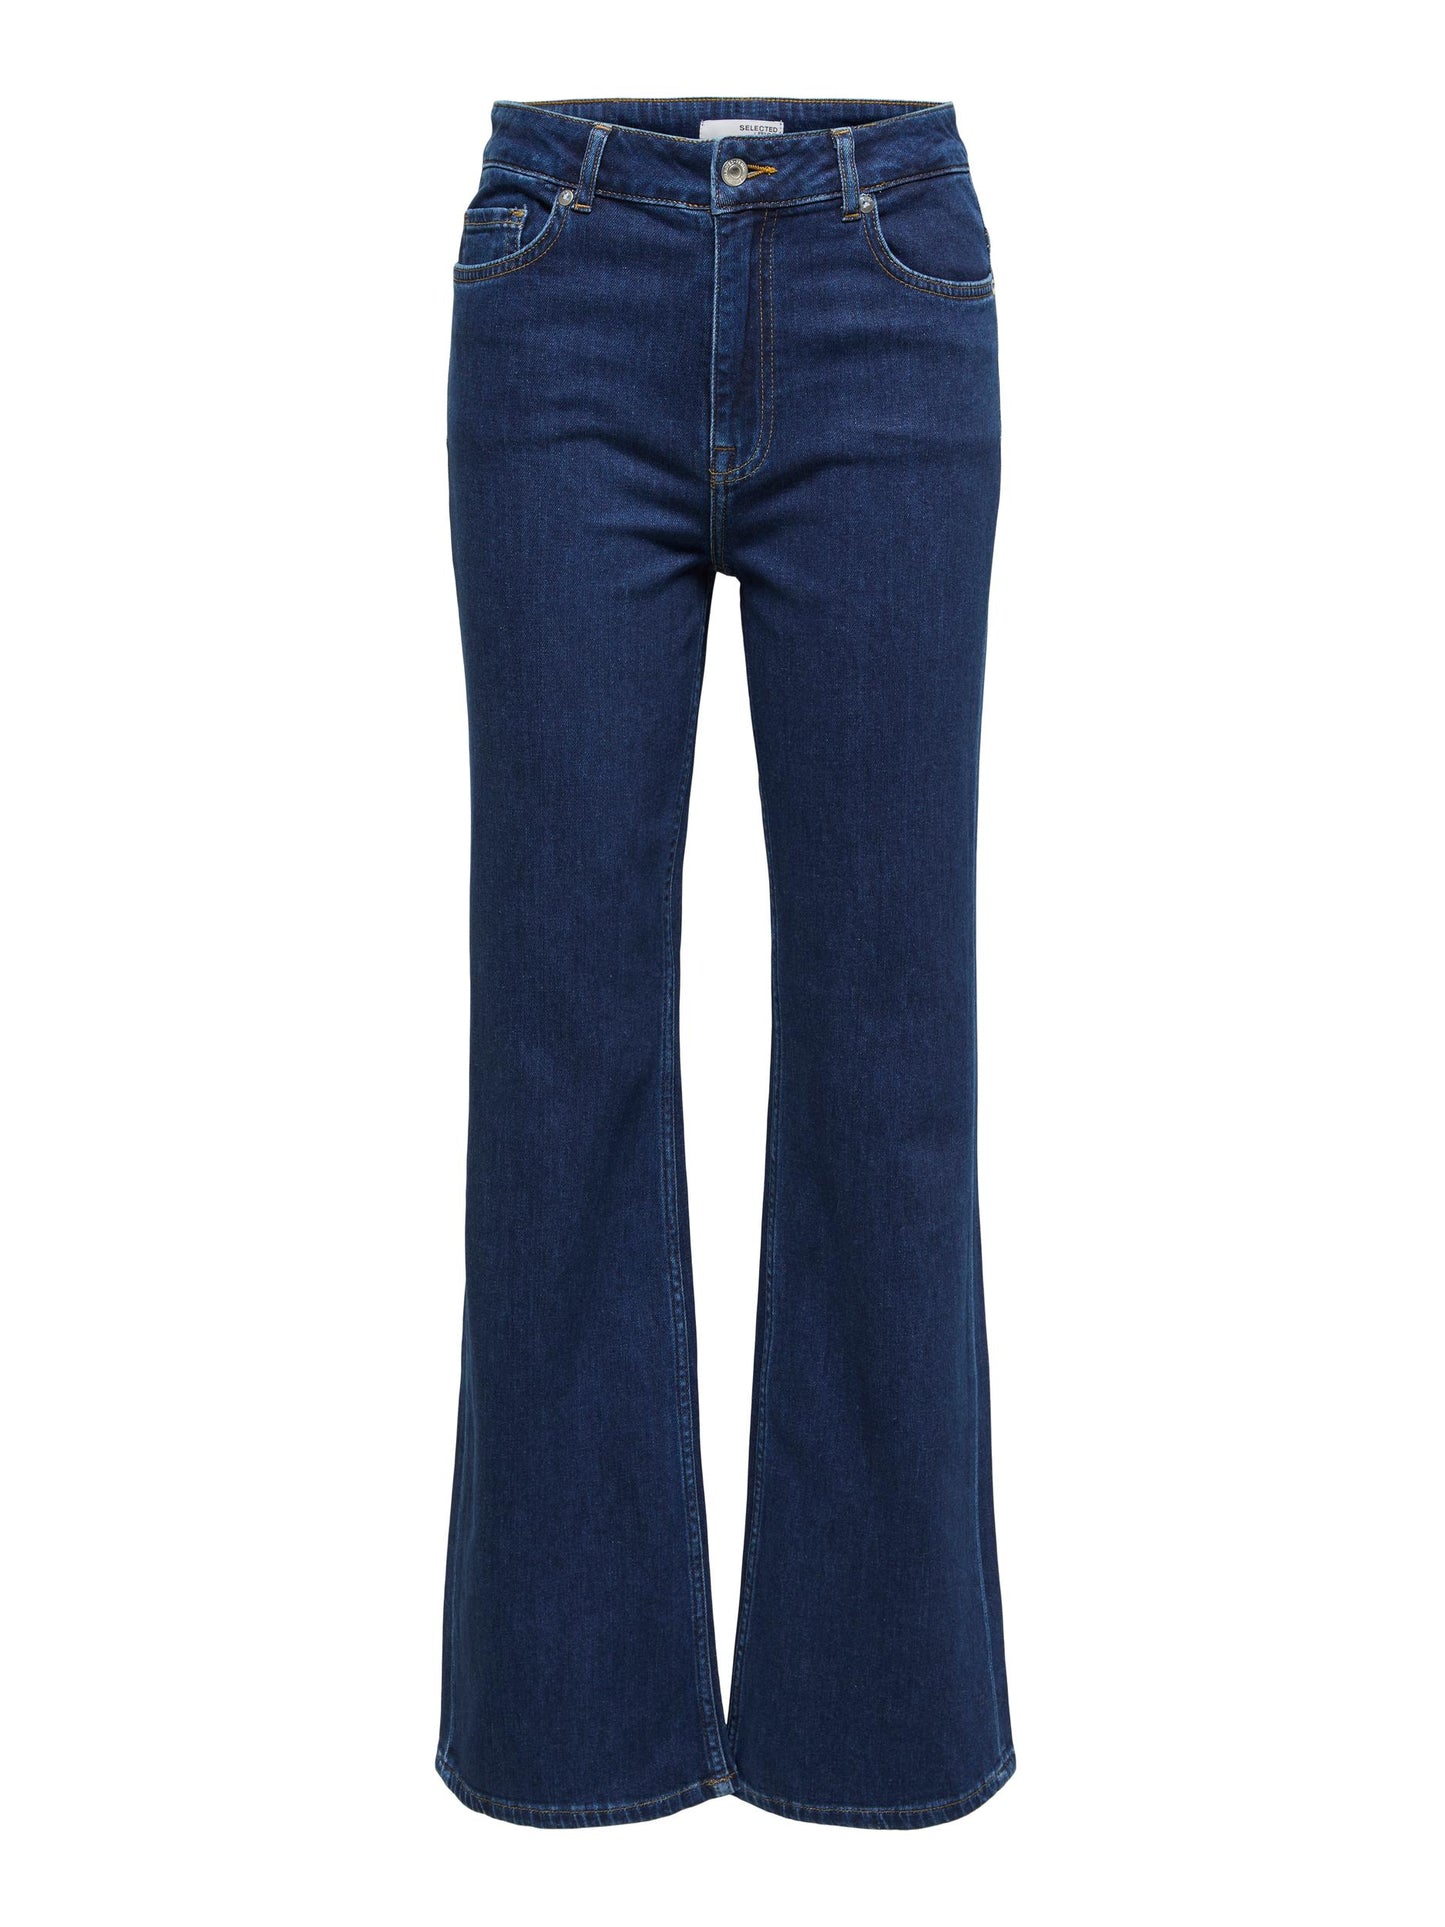 Brigitte High Waisted Bootcut Jeans - Dark Blue